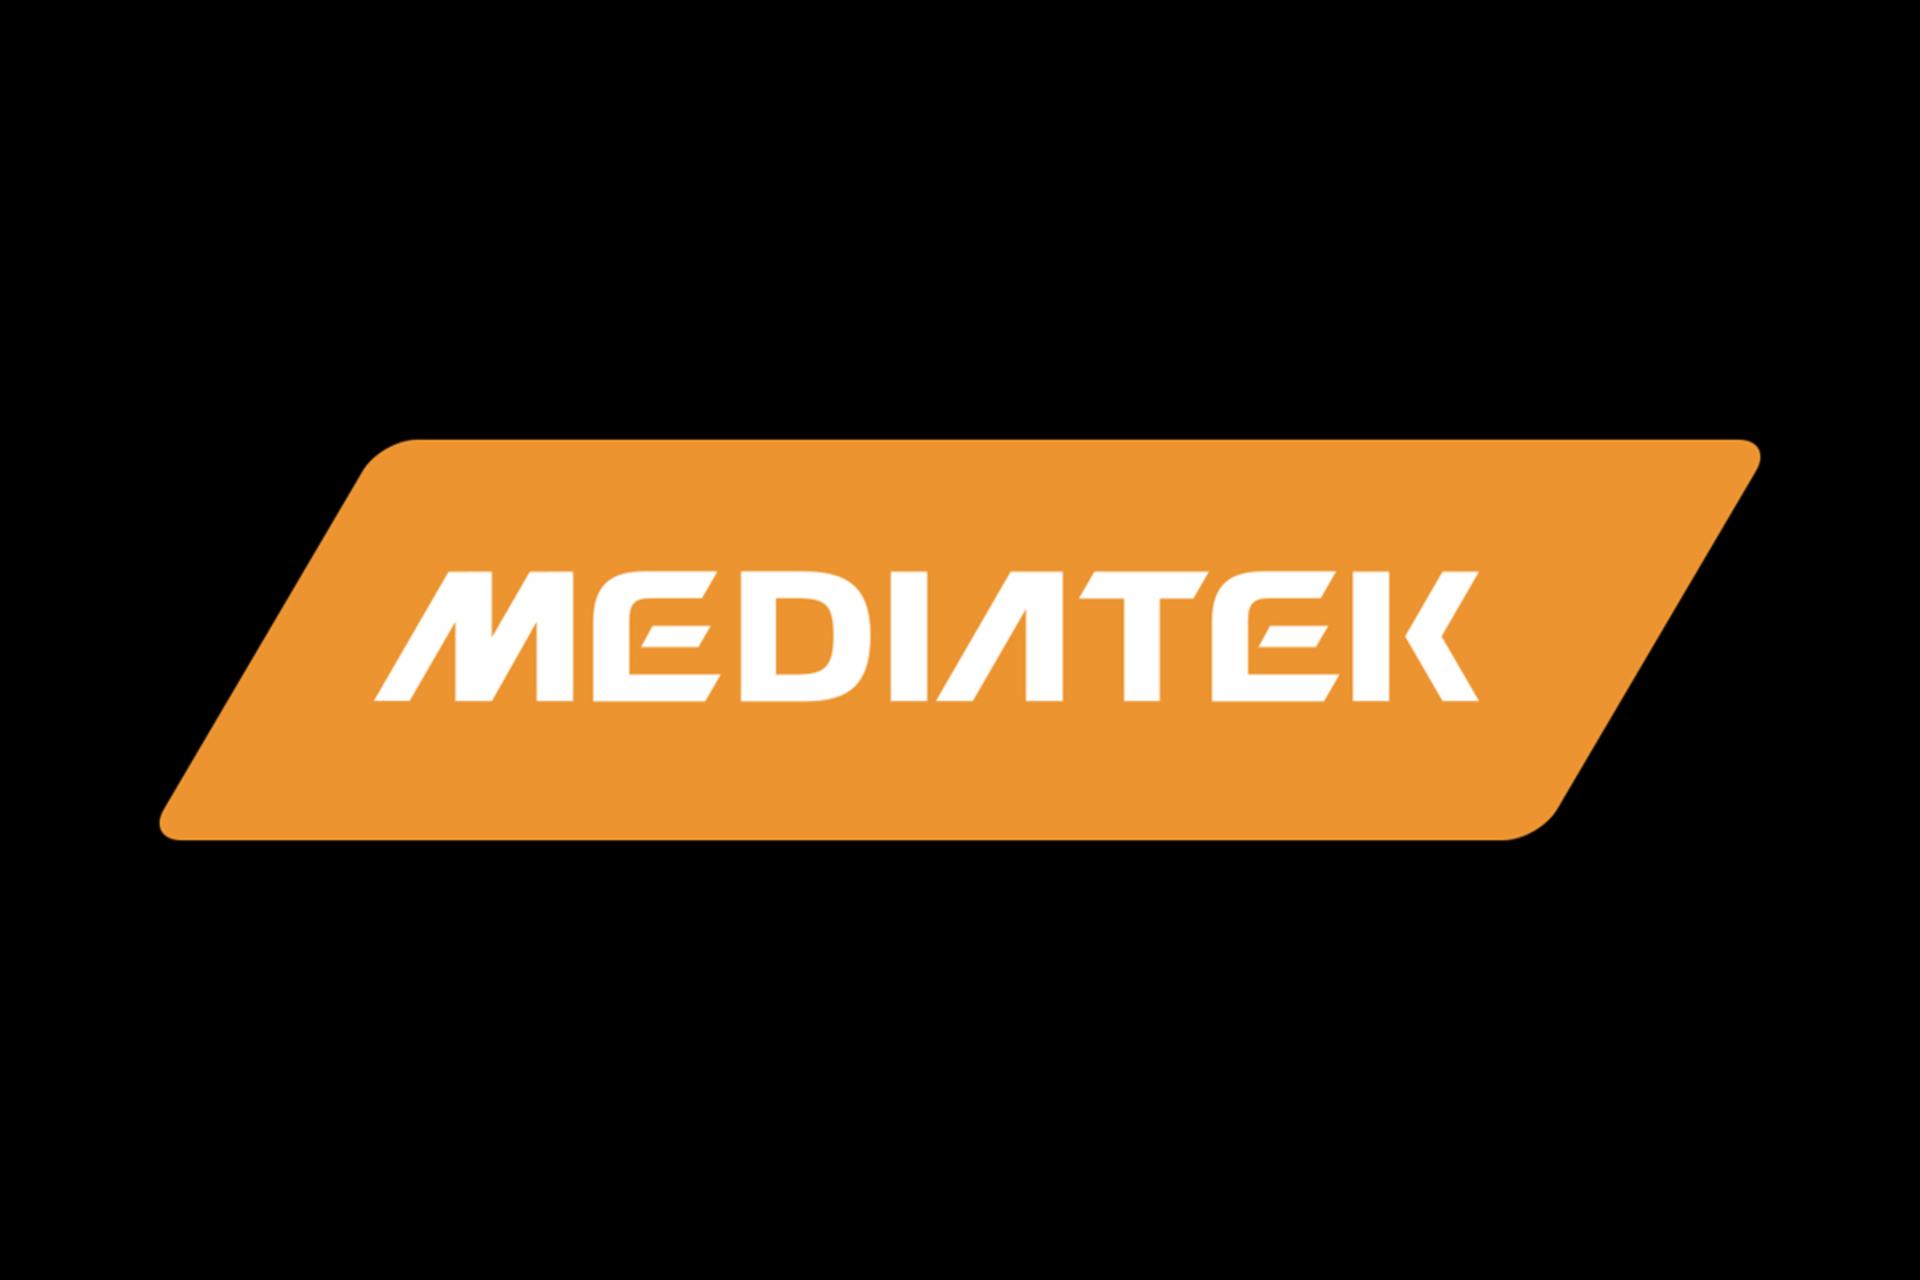 لوگو مدیاتک / MediaTek رنگ زرد